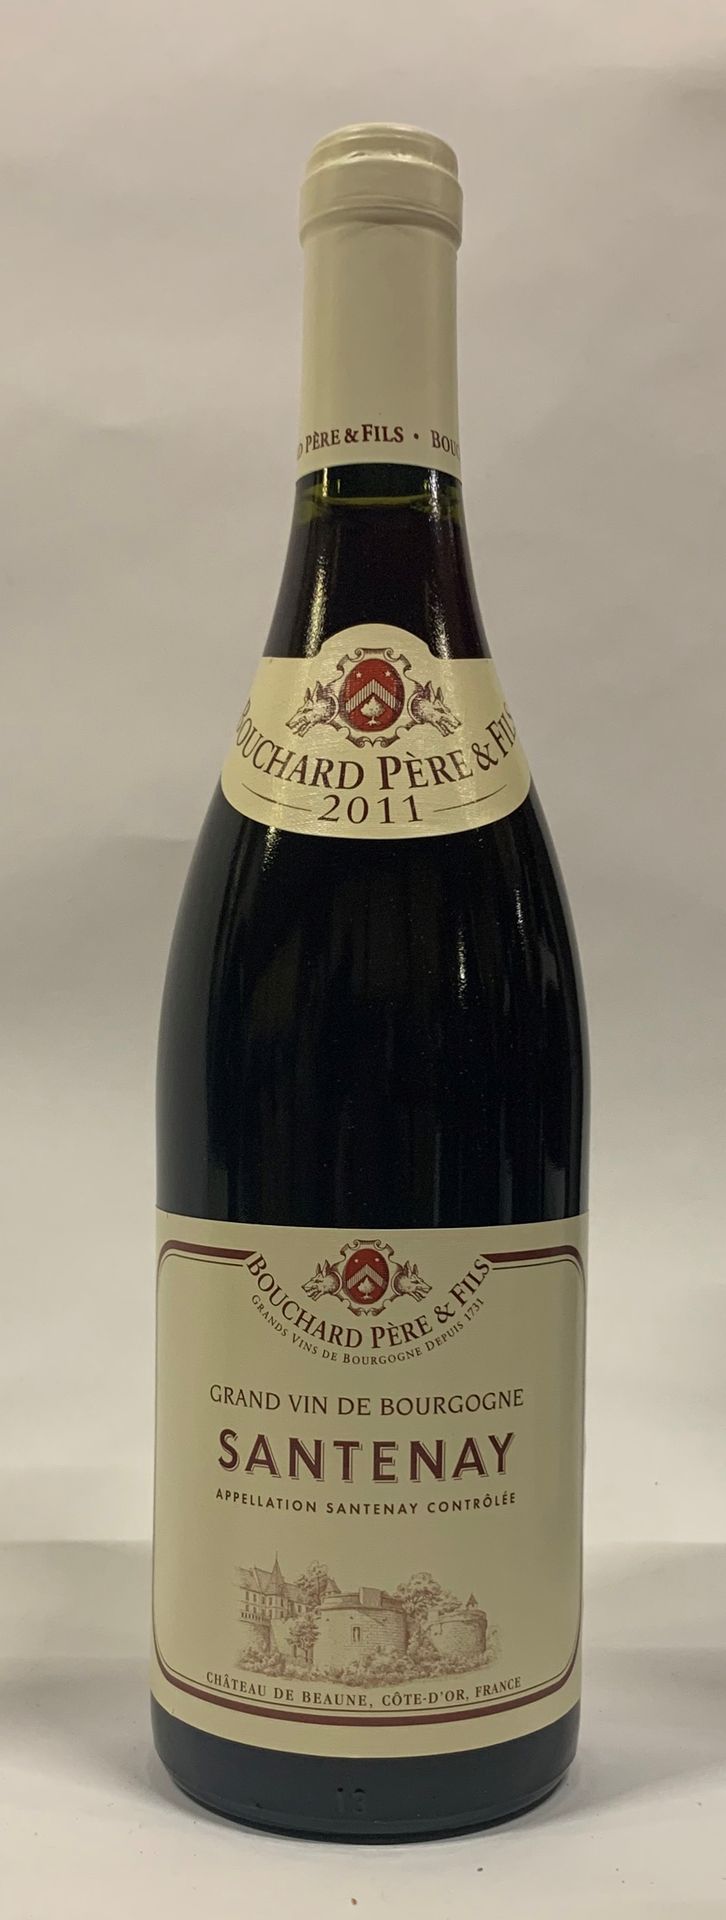 Null ● SANTENAY | Bouchard Père & Fils, 2011

6 bouteilles

Réf. 6